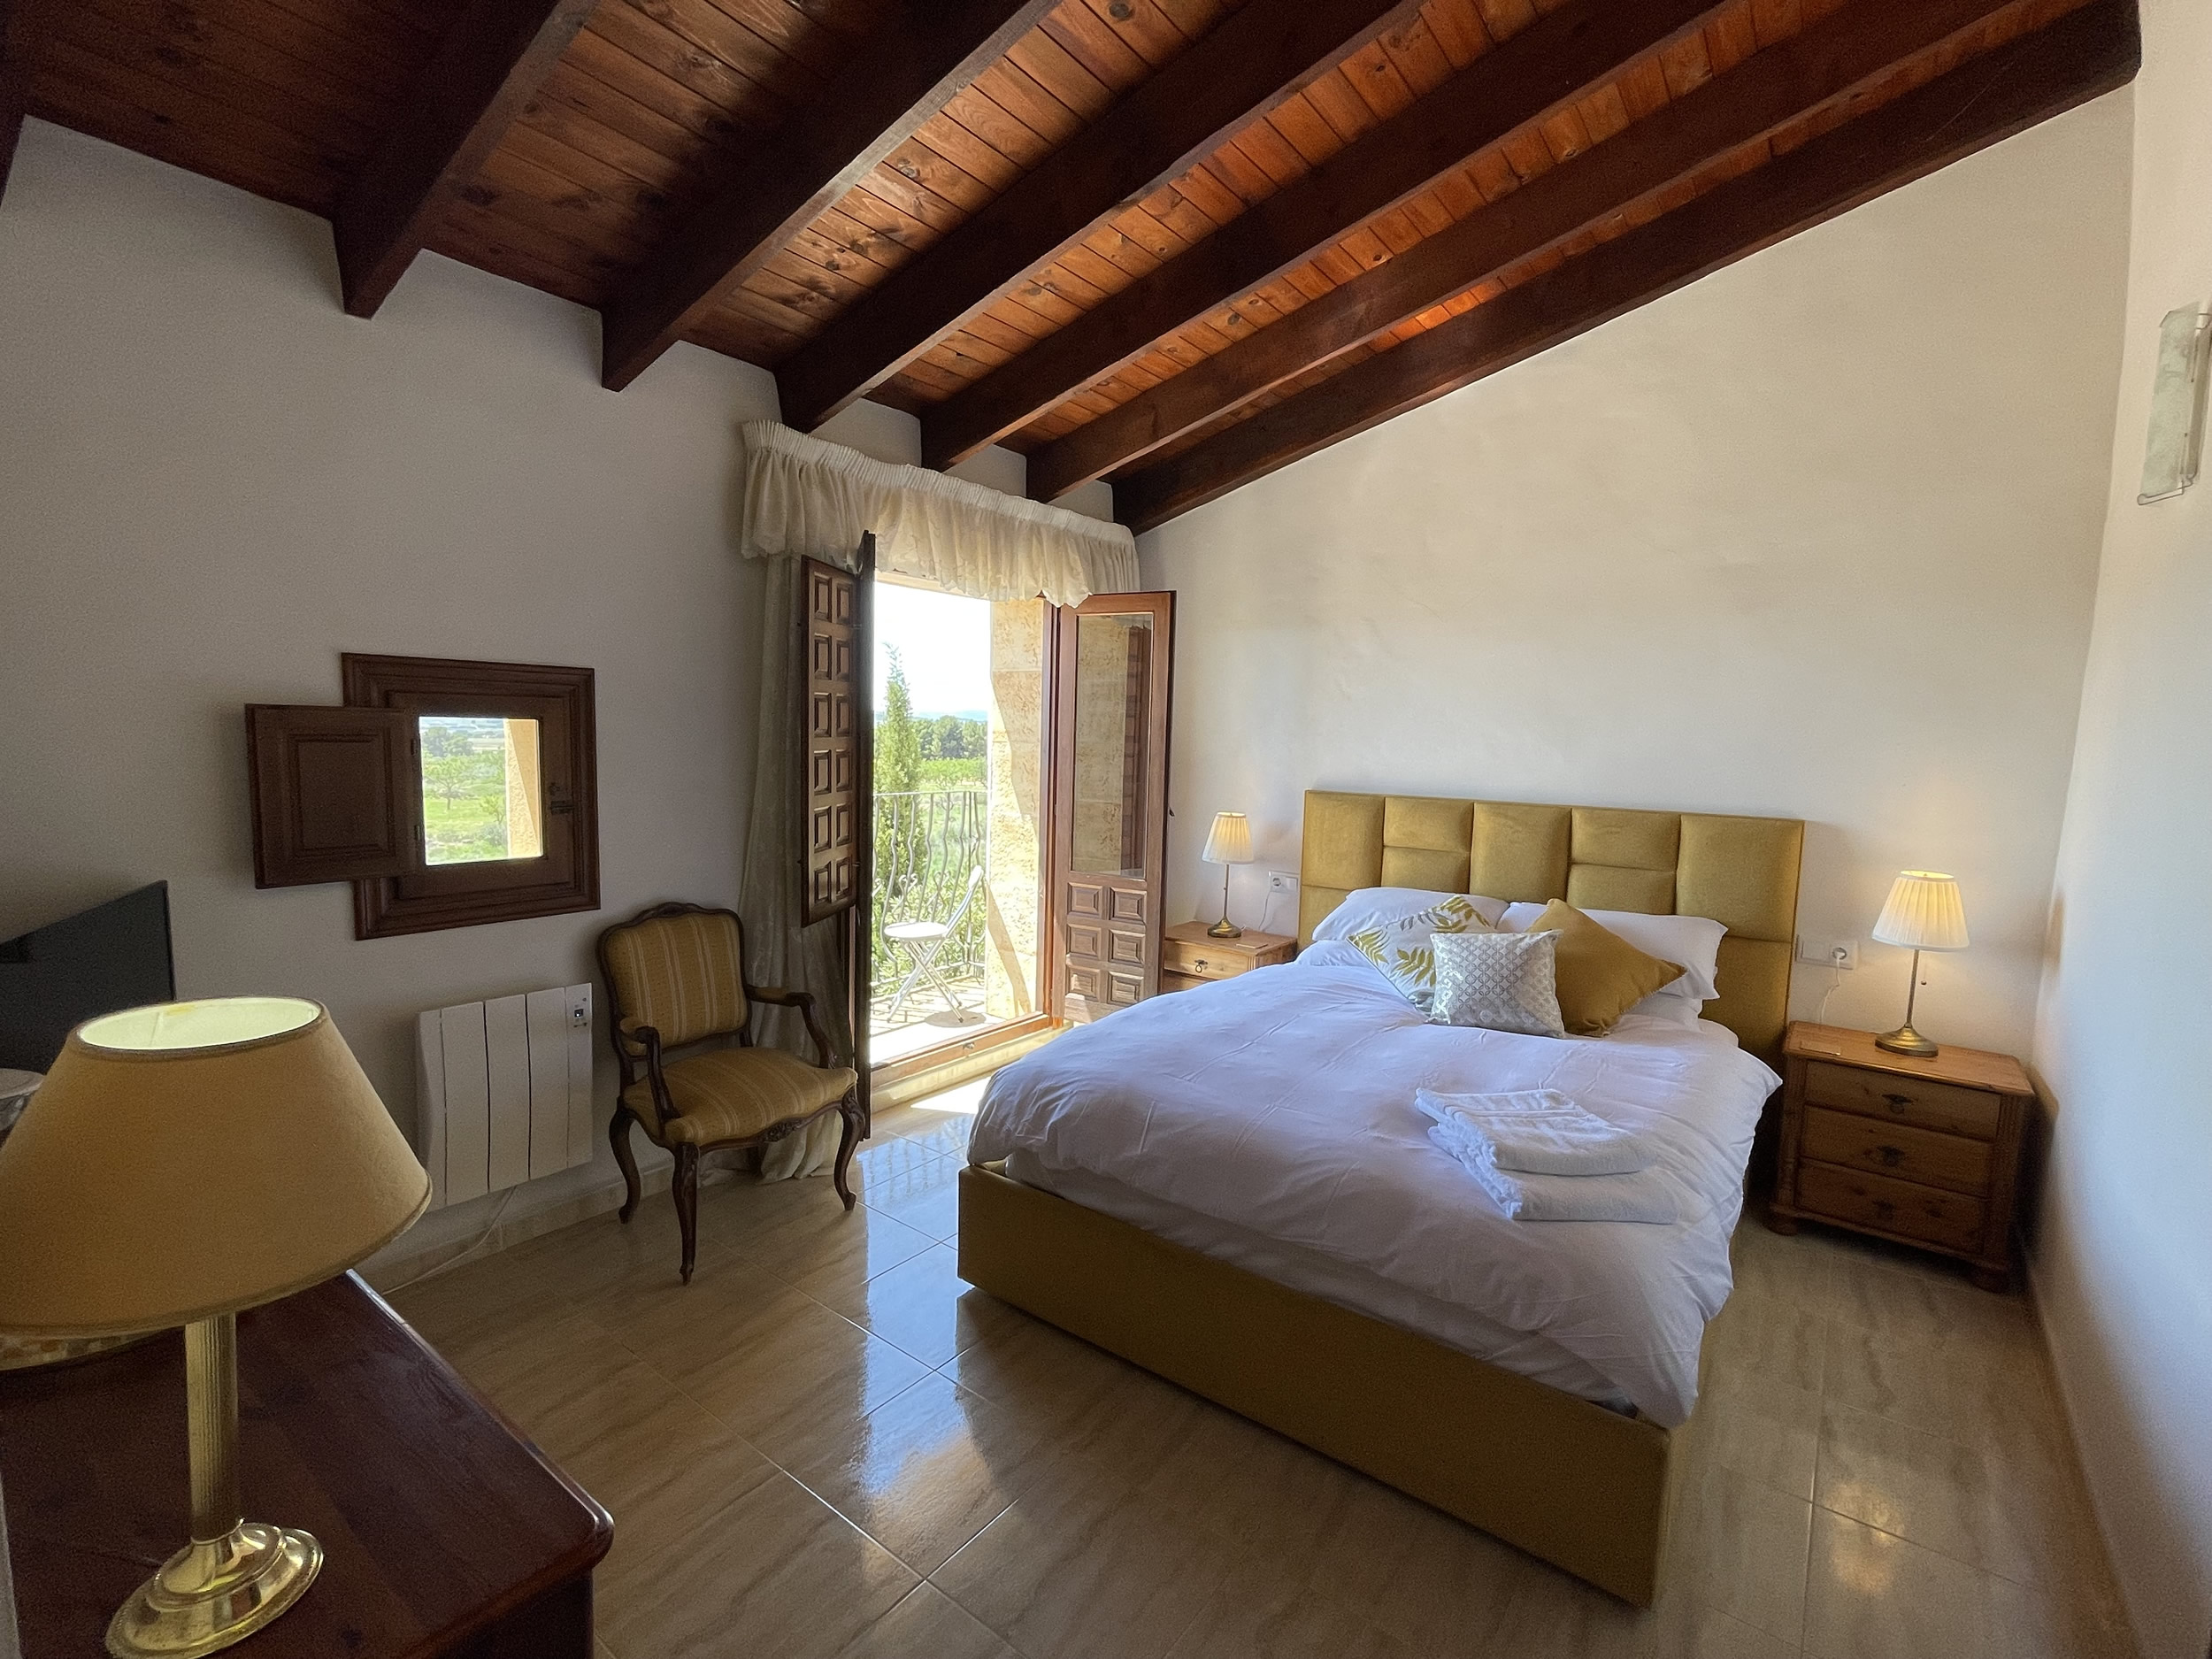 La Dorada, the Gold room with private balcony